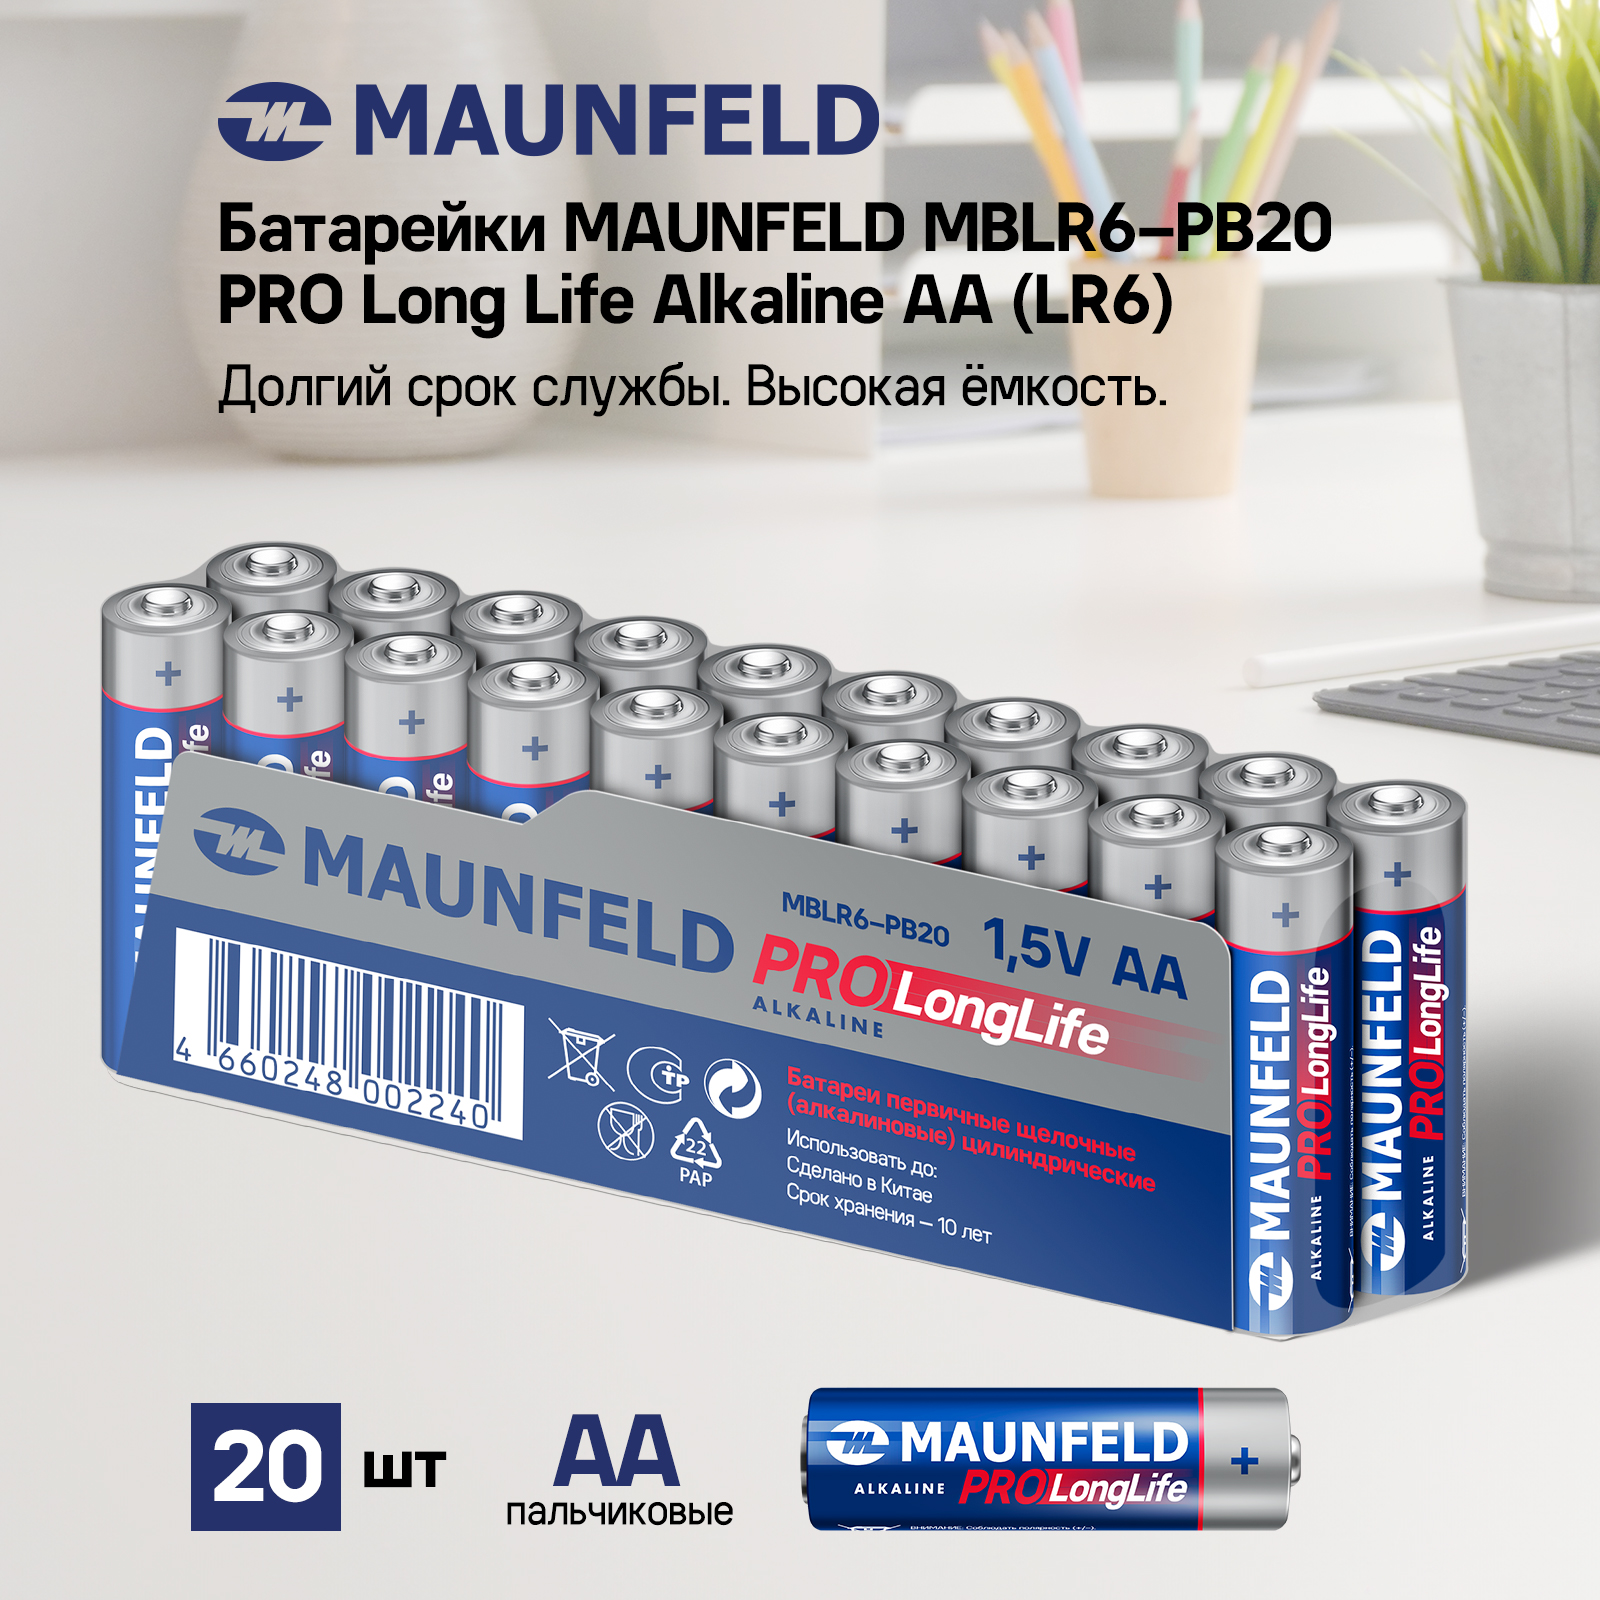 Батарейки MAUNFELD PRO Long Life Alkaline AA (LR6) MBLR6-PB20, спайка 20 шт. - купить в Официальный магазин производителя MAUNFELD, цена на Мегамаркет